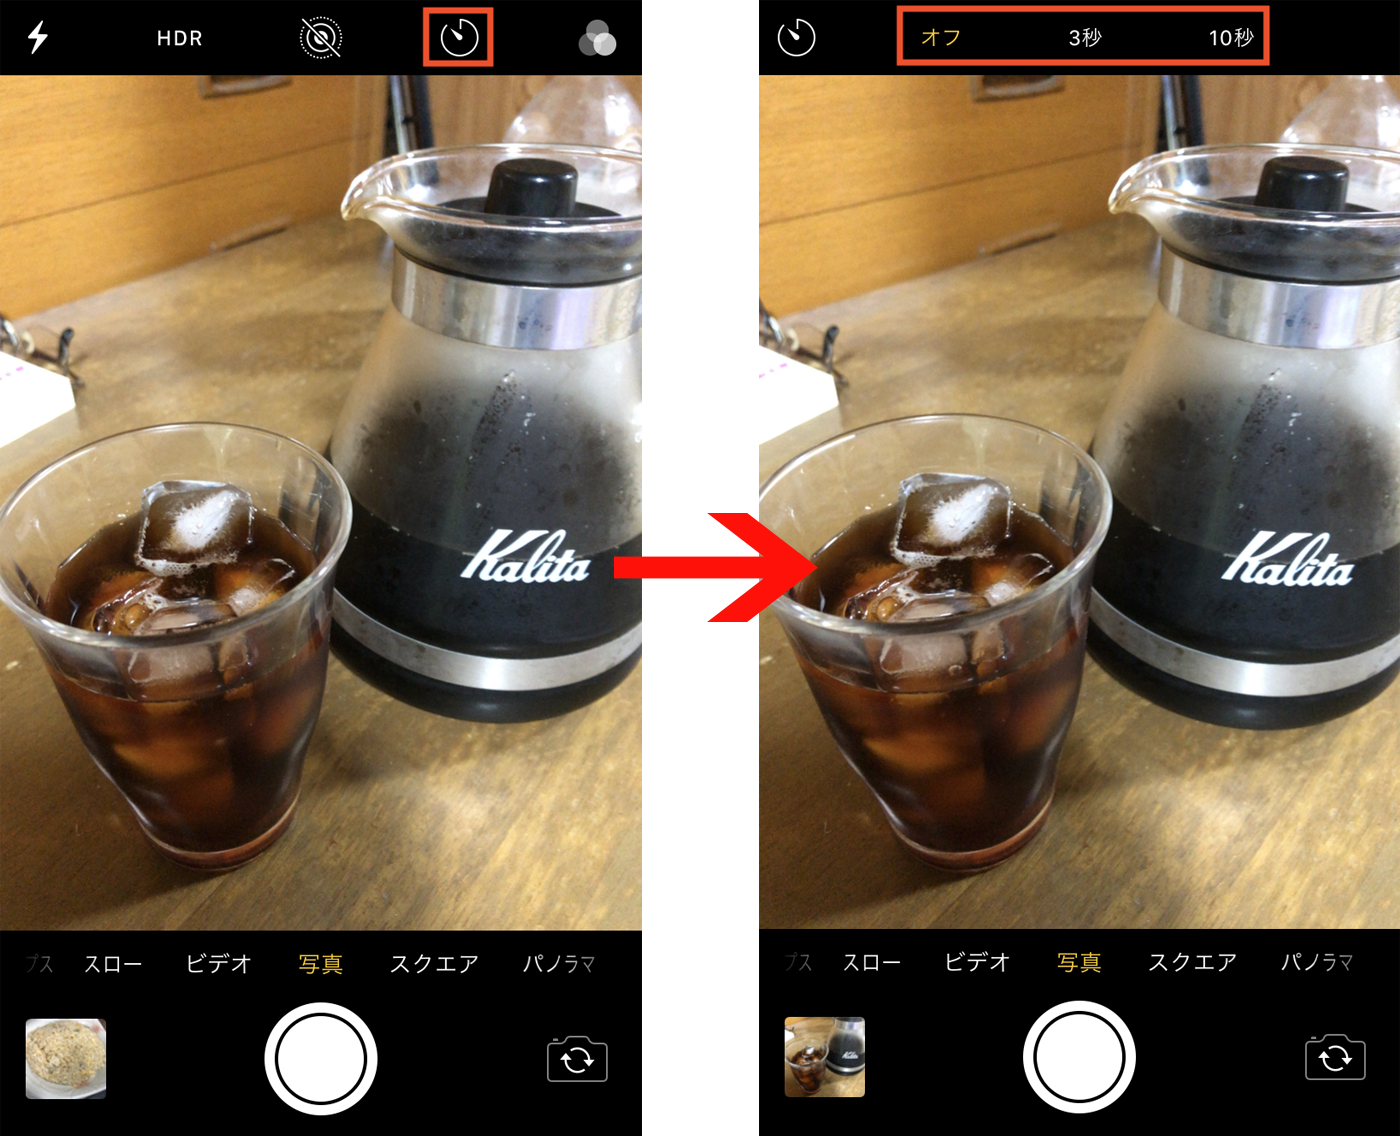 Iphoneのカメラでセルフタイマーを使う Macfan